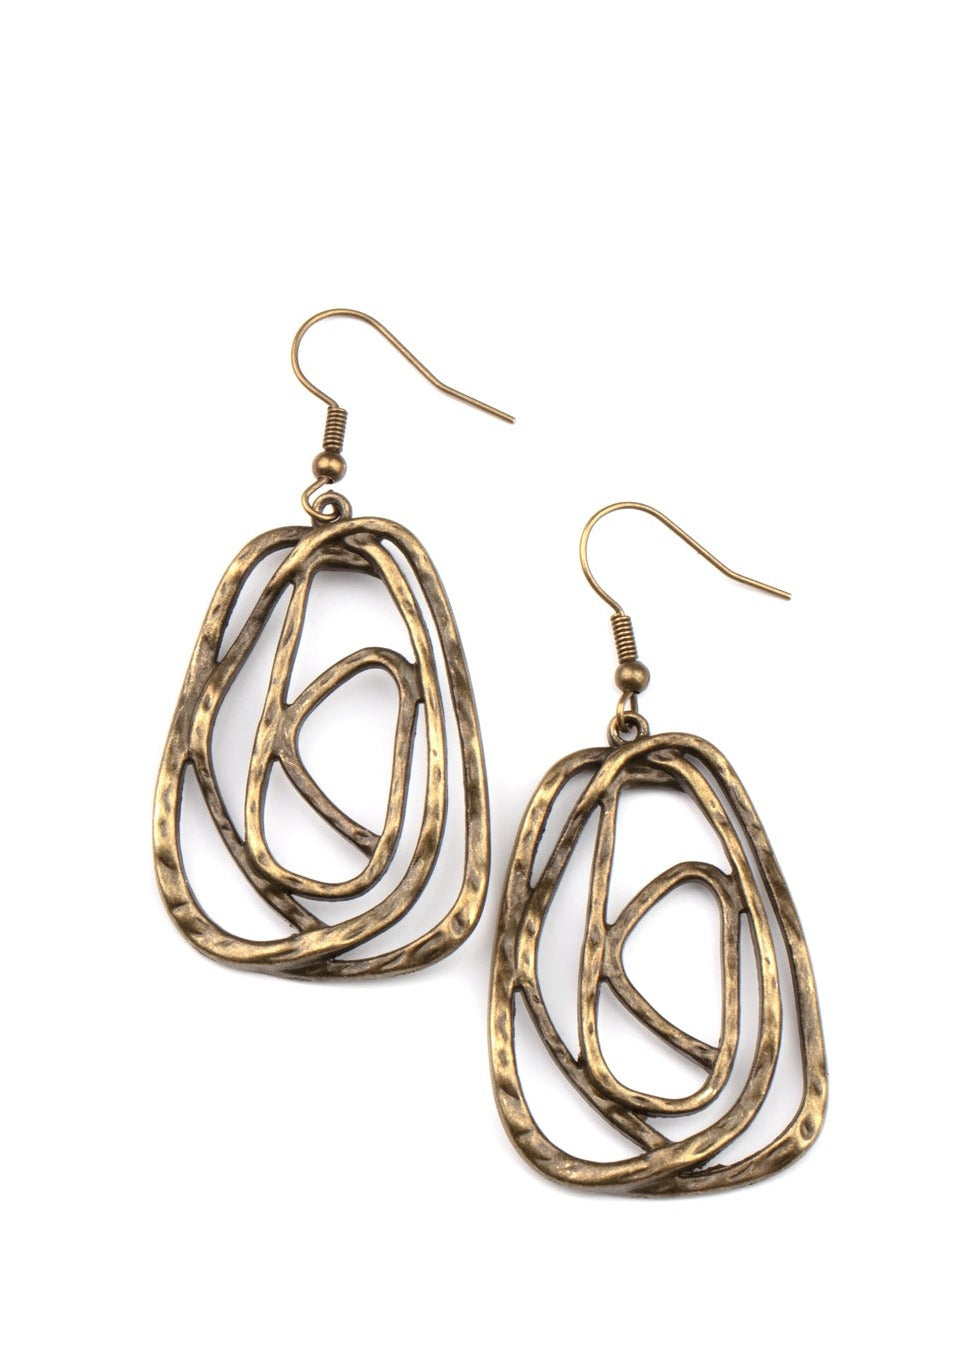 Artisan Relic - Brass Earrings